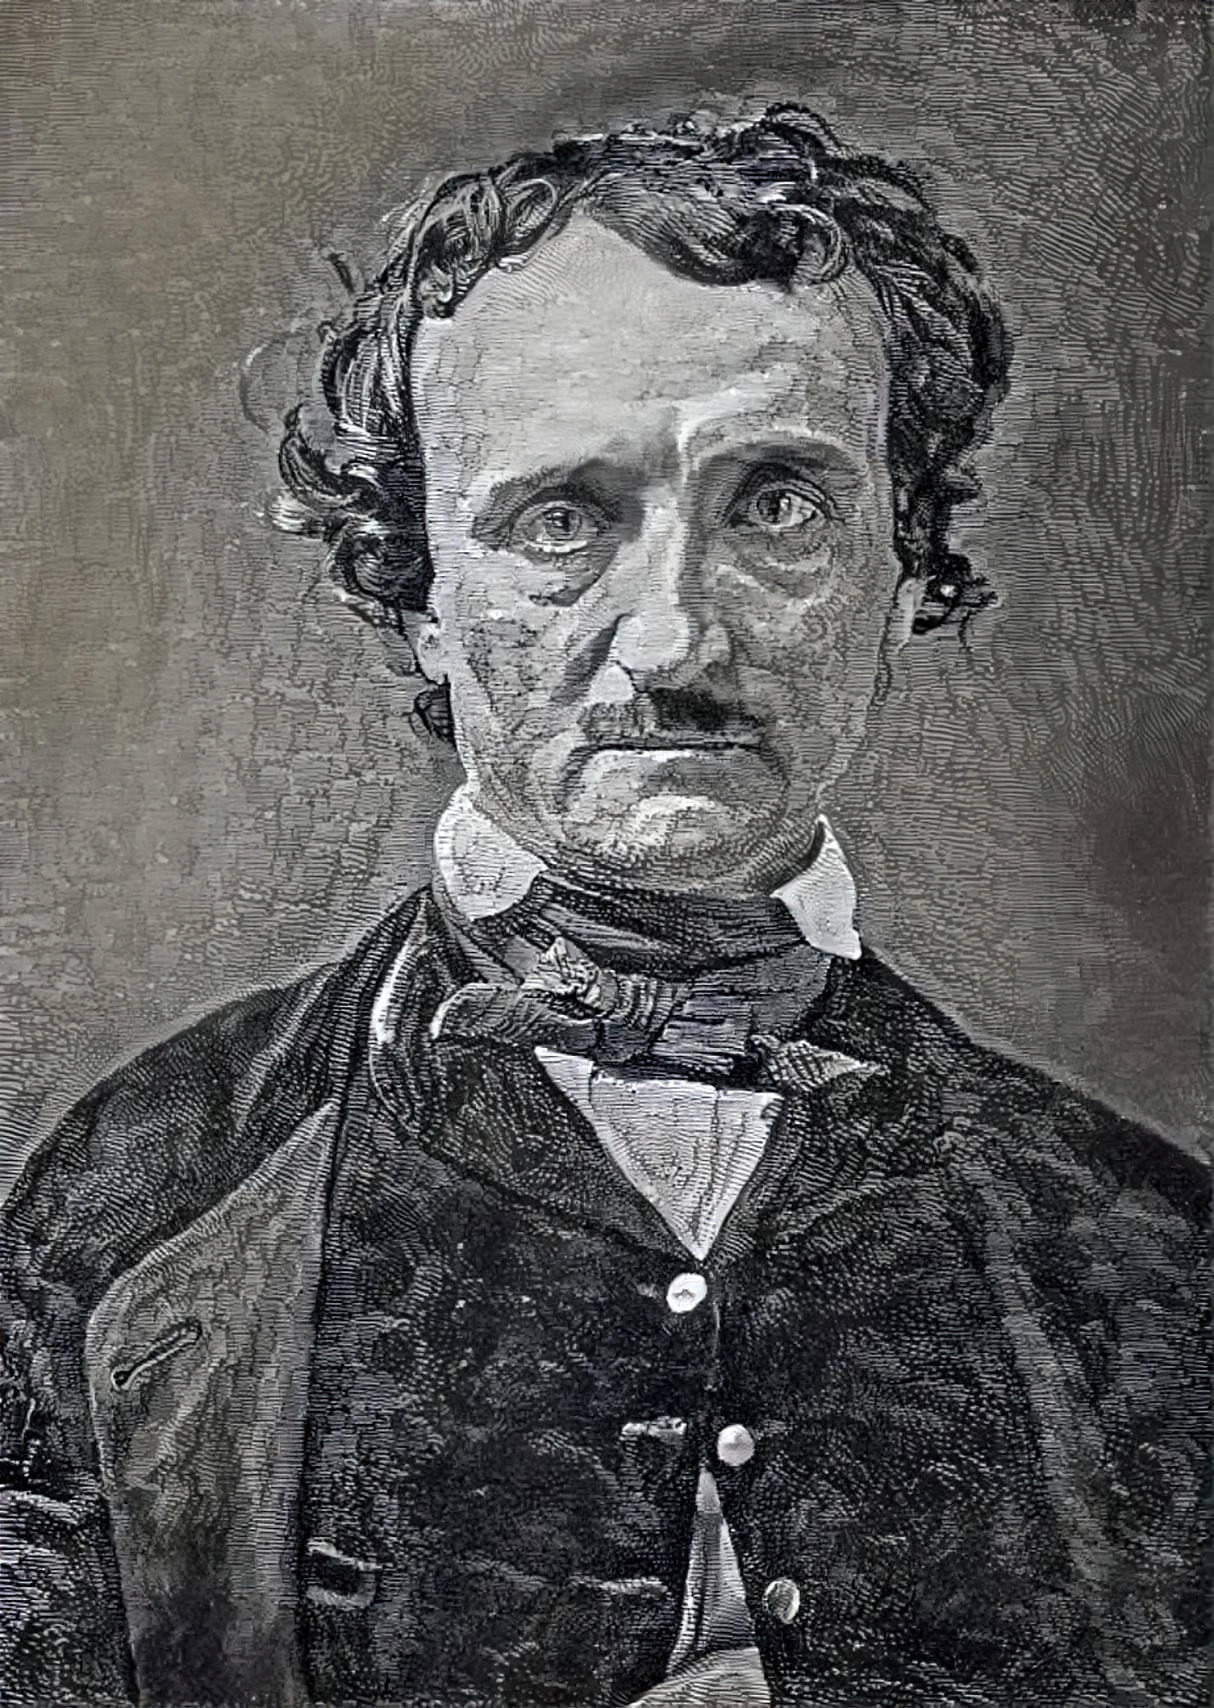 Poe by Gustav Doré